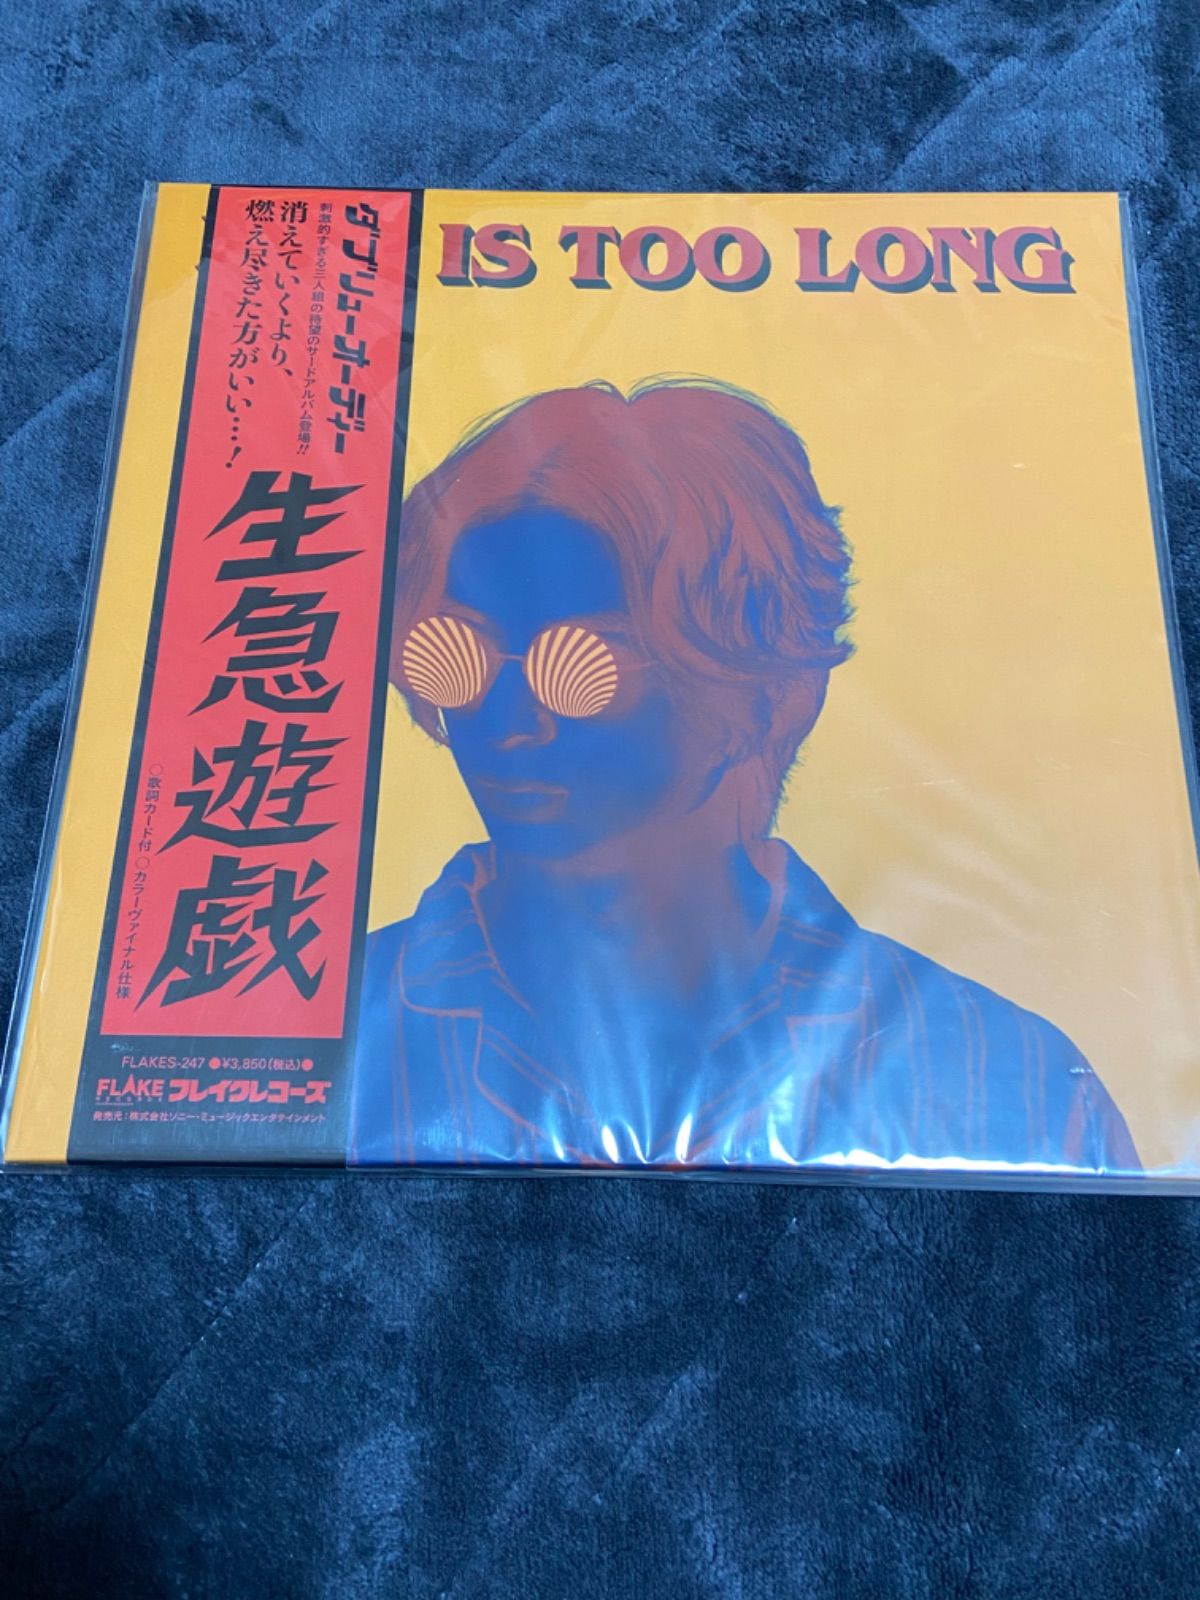 サニーデイサービスw.o.d. – Life Is Too Long アナログレコード LP - 邦楽